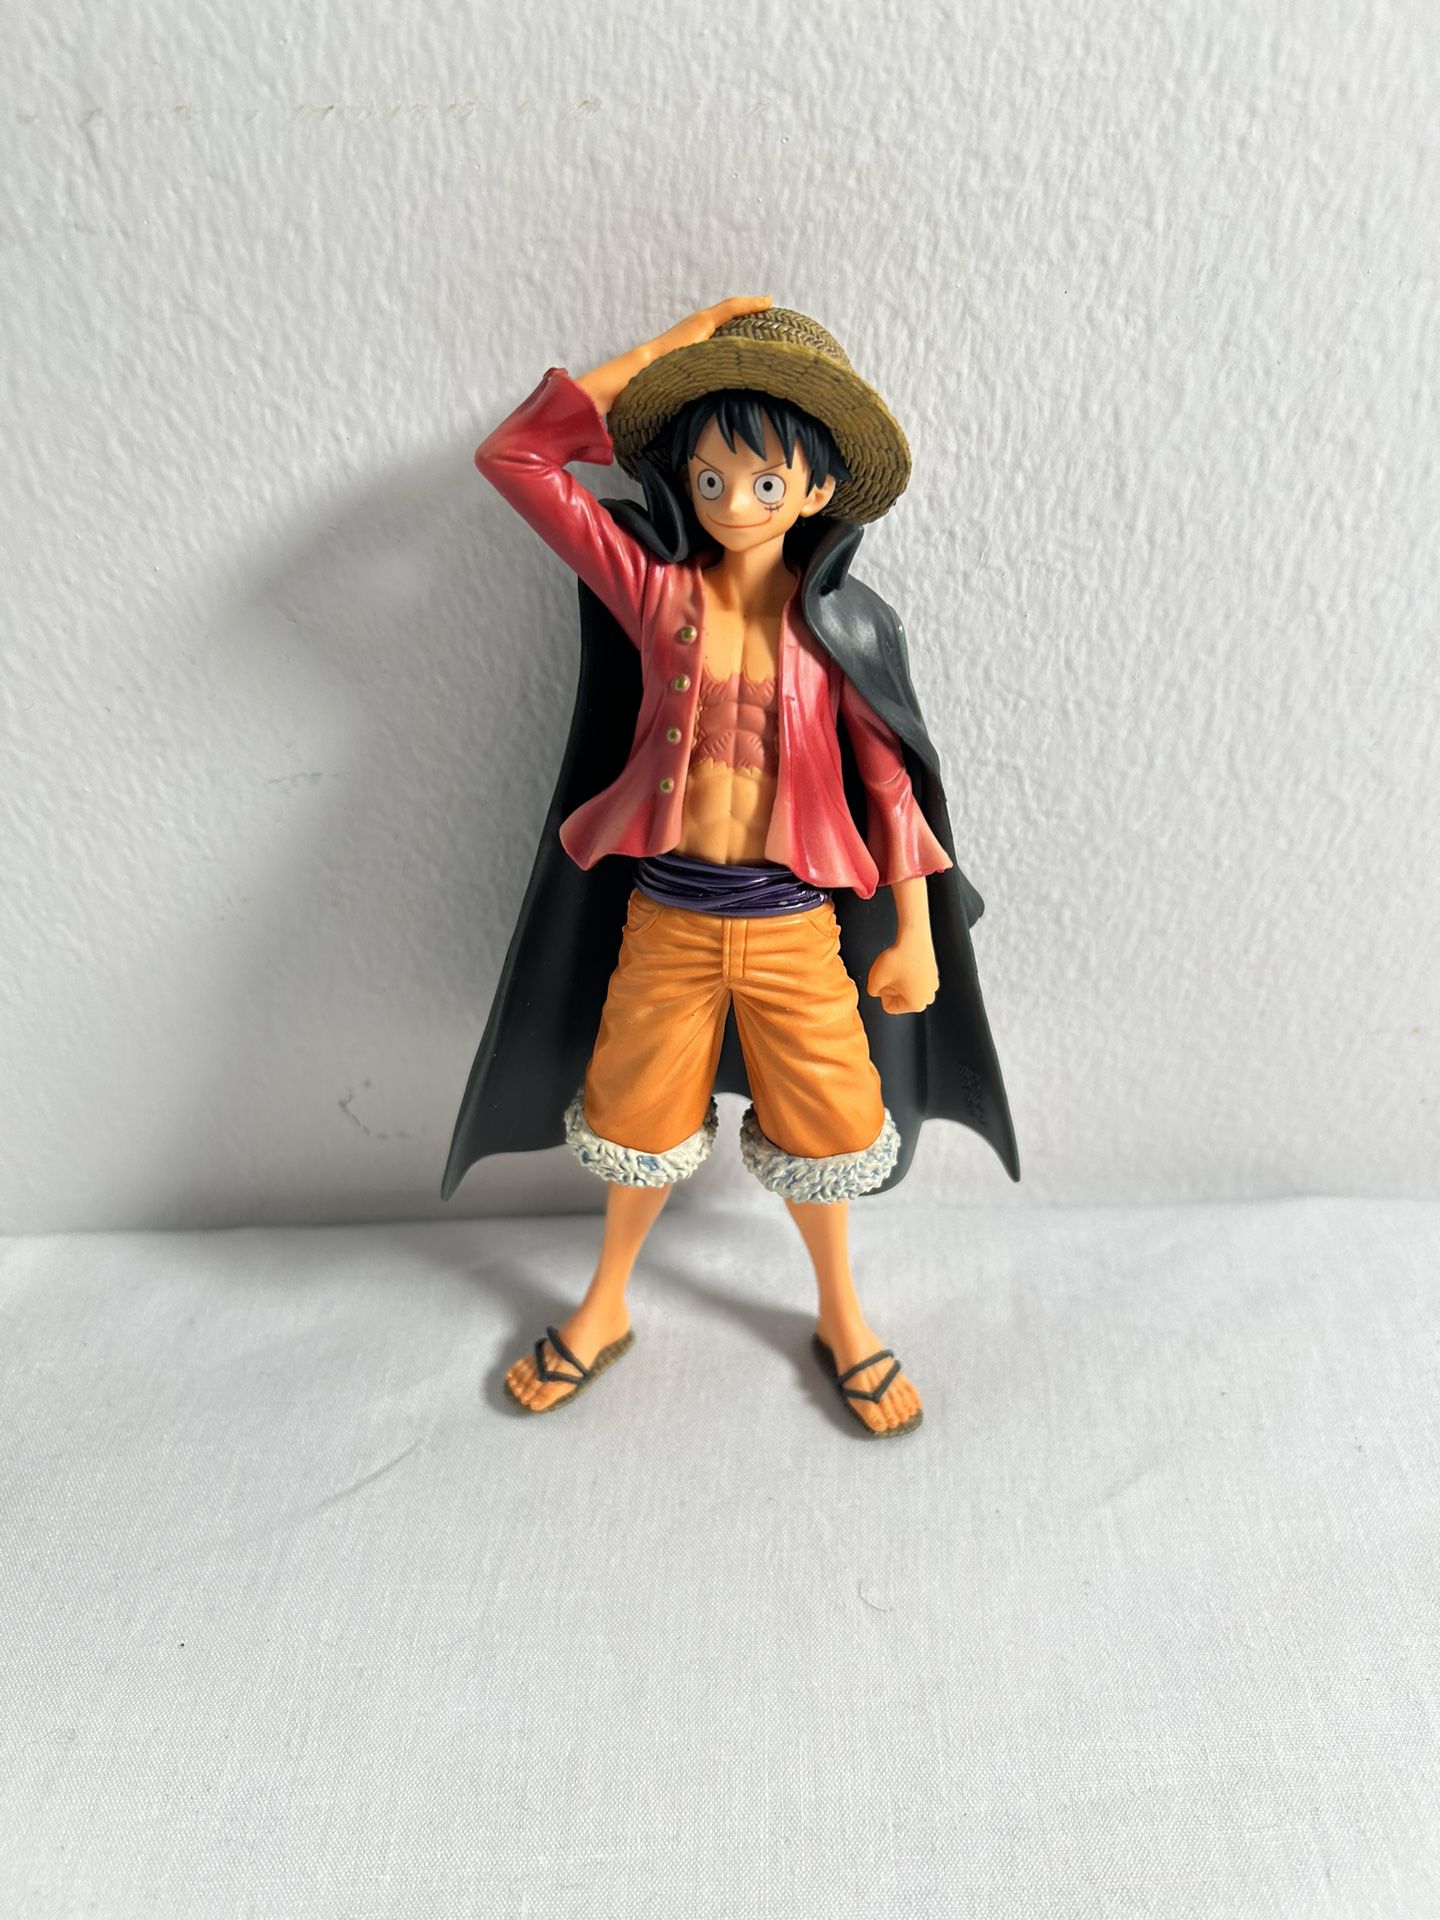 One Piece Figurine Monkey D Luffy Figurine PVC 6.5" Tall Straw Hat Pirate Anime 